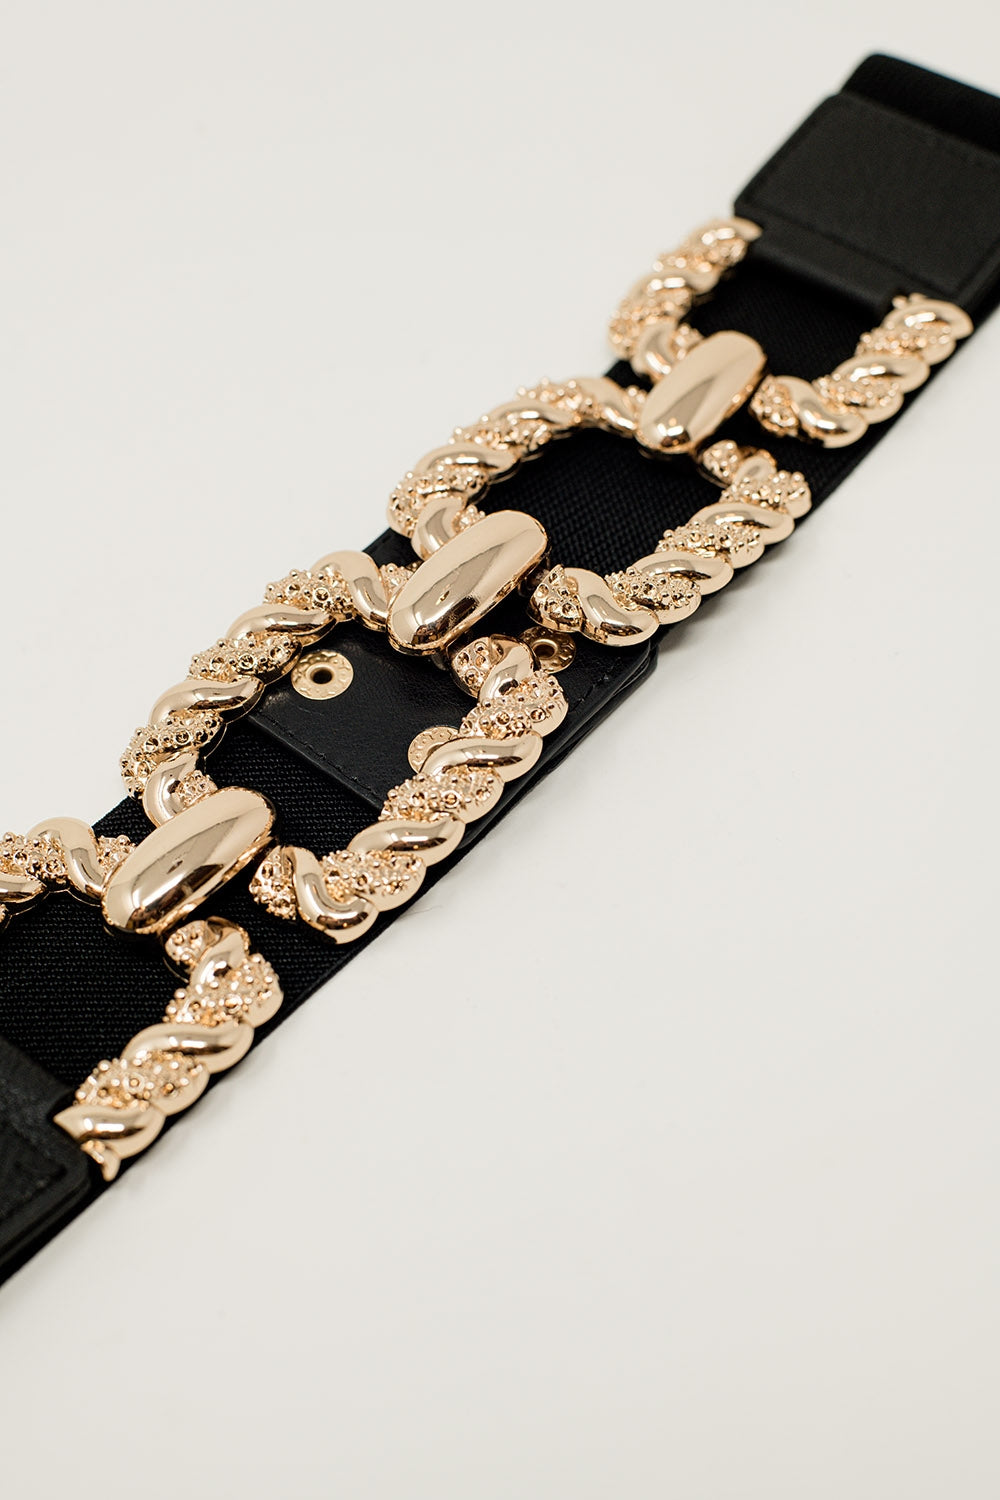 Cintura elasticizzata nera aderente con dettagli incrociati metallici intrecciati